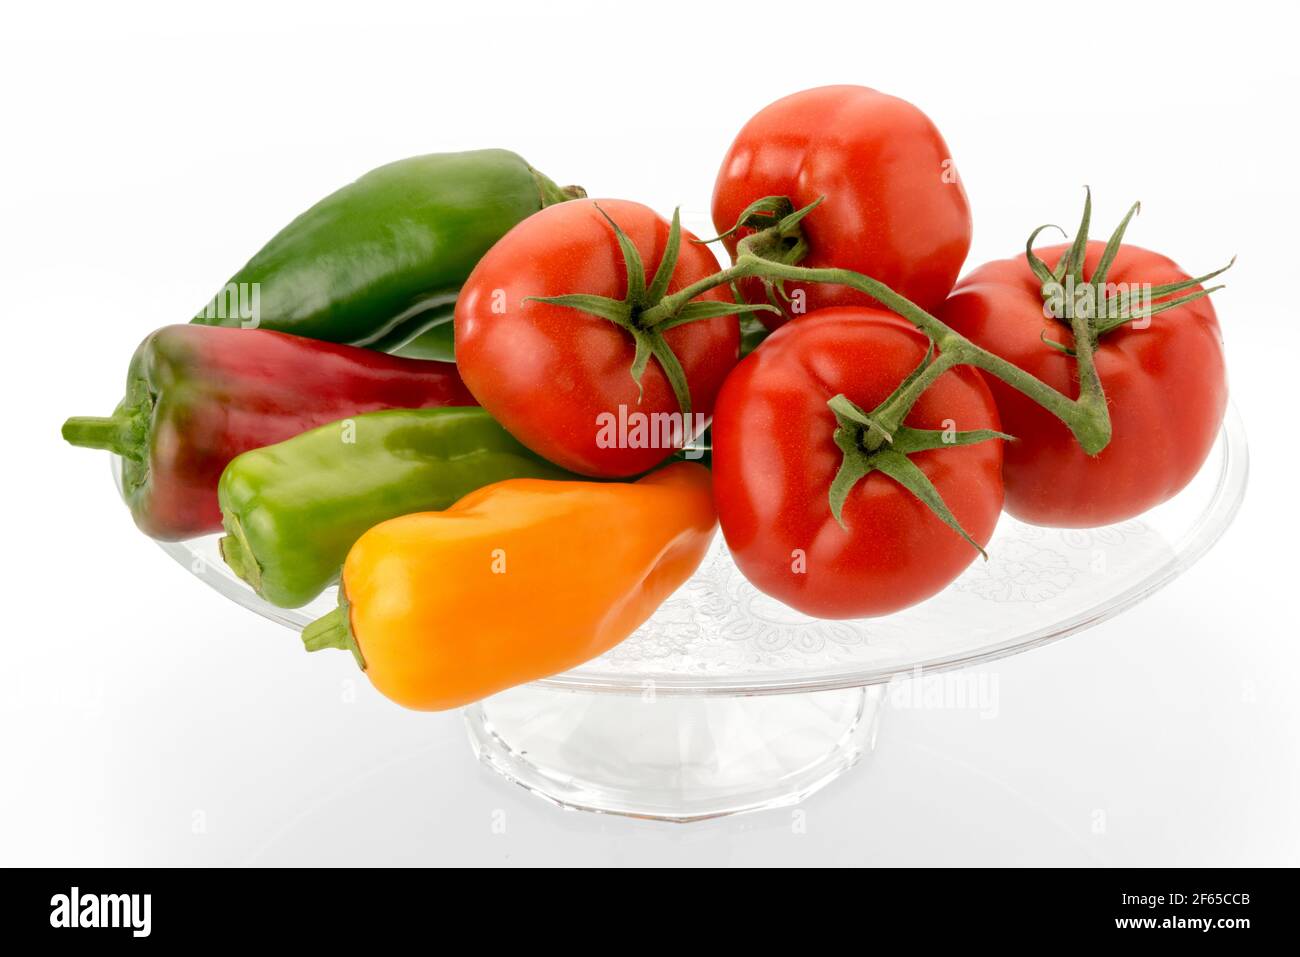 Tomaten und Paprika auf klarem Glas erhöhte Platte - rot, gelb und grün Gemüse isoliert auf weißem Hintergrund Stockfoto